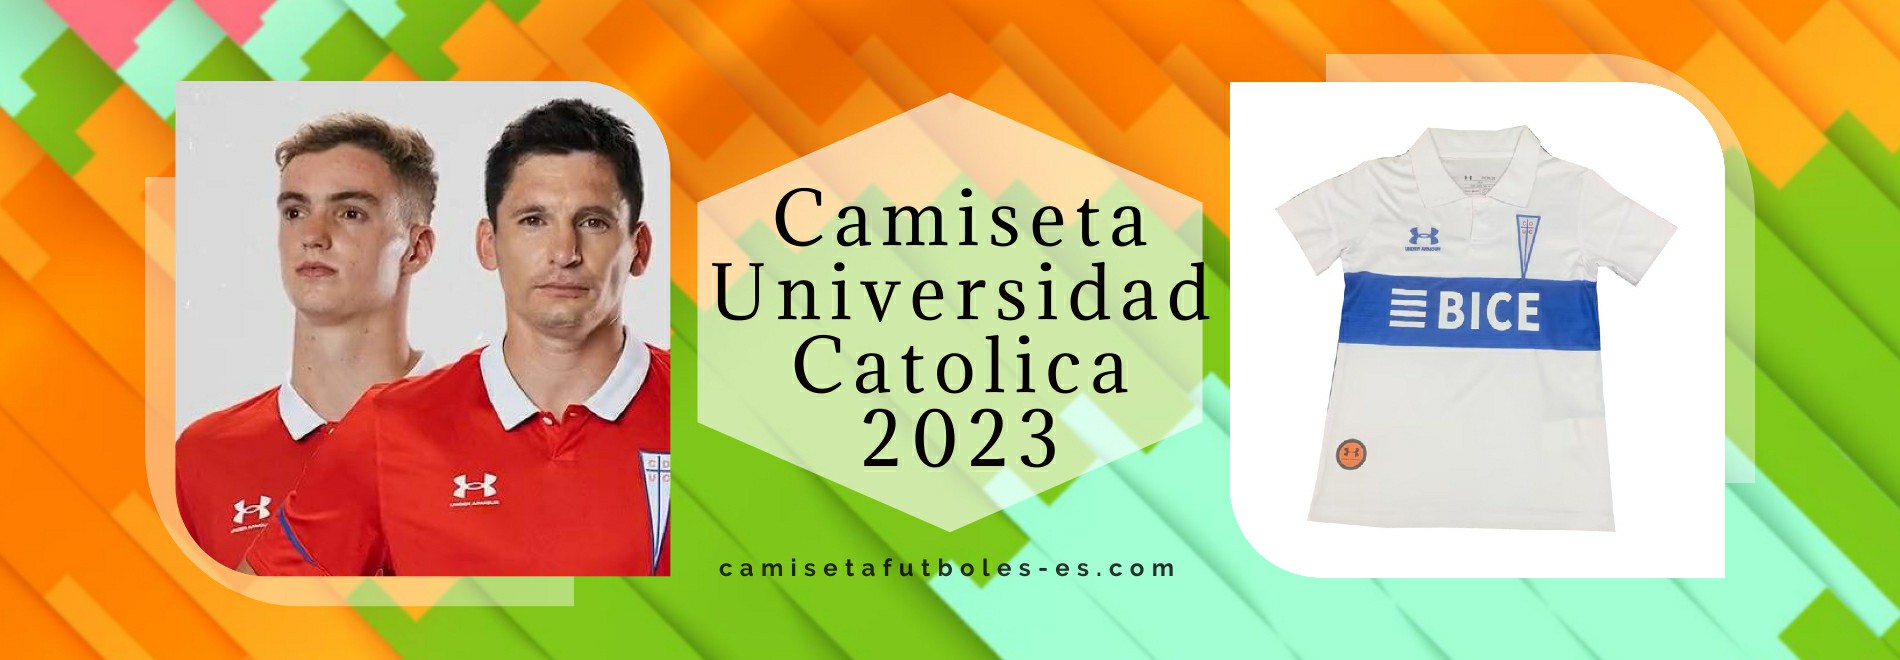 Camiseta Universidad Catolica 2023-2024